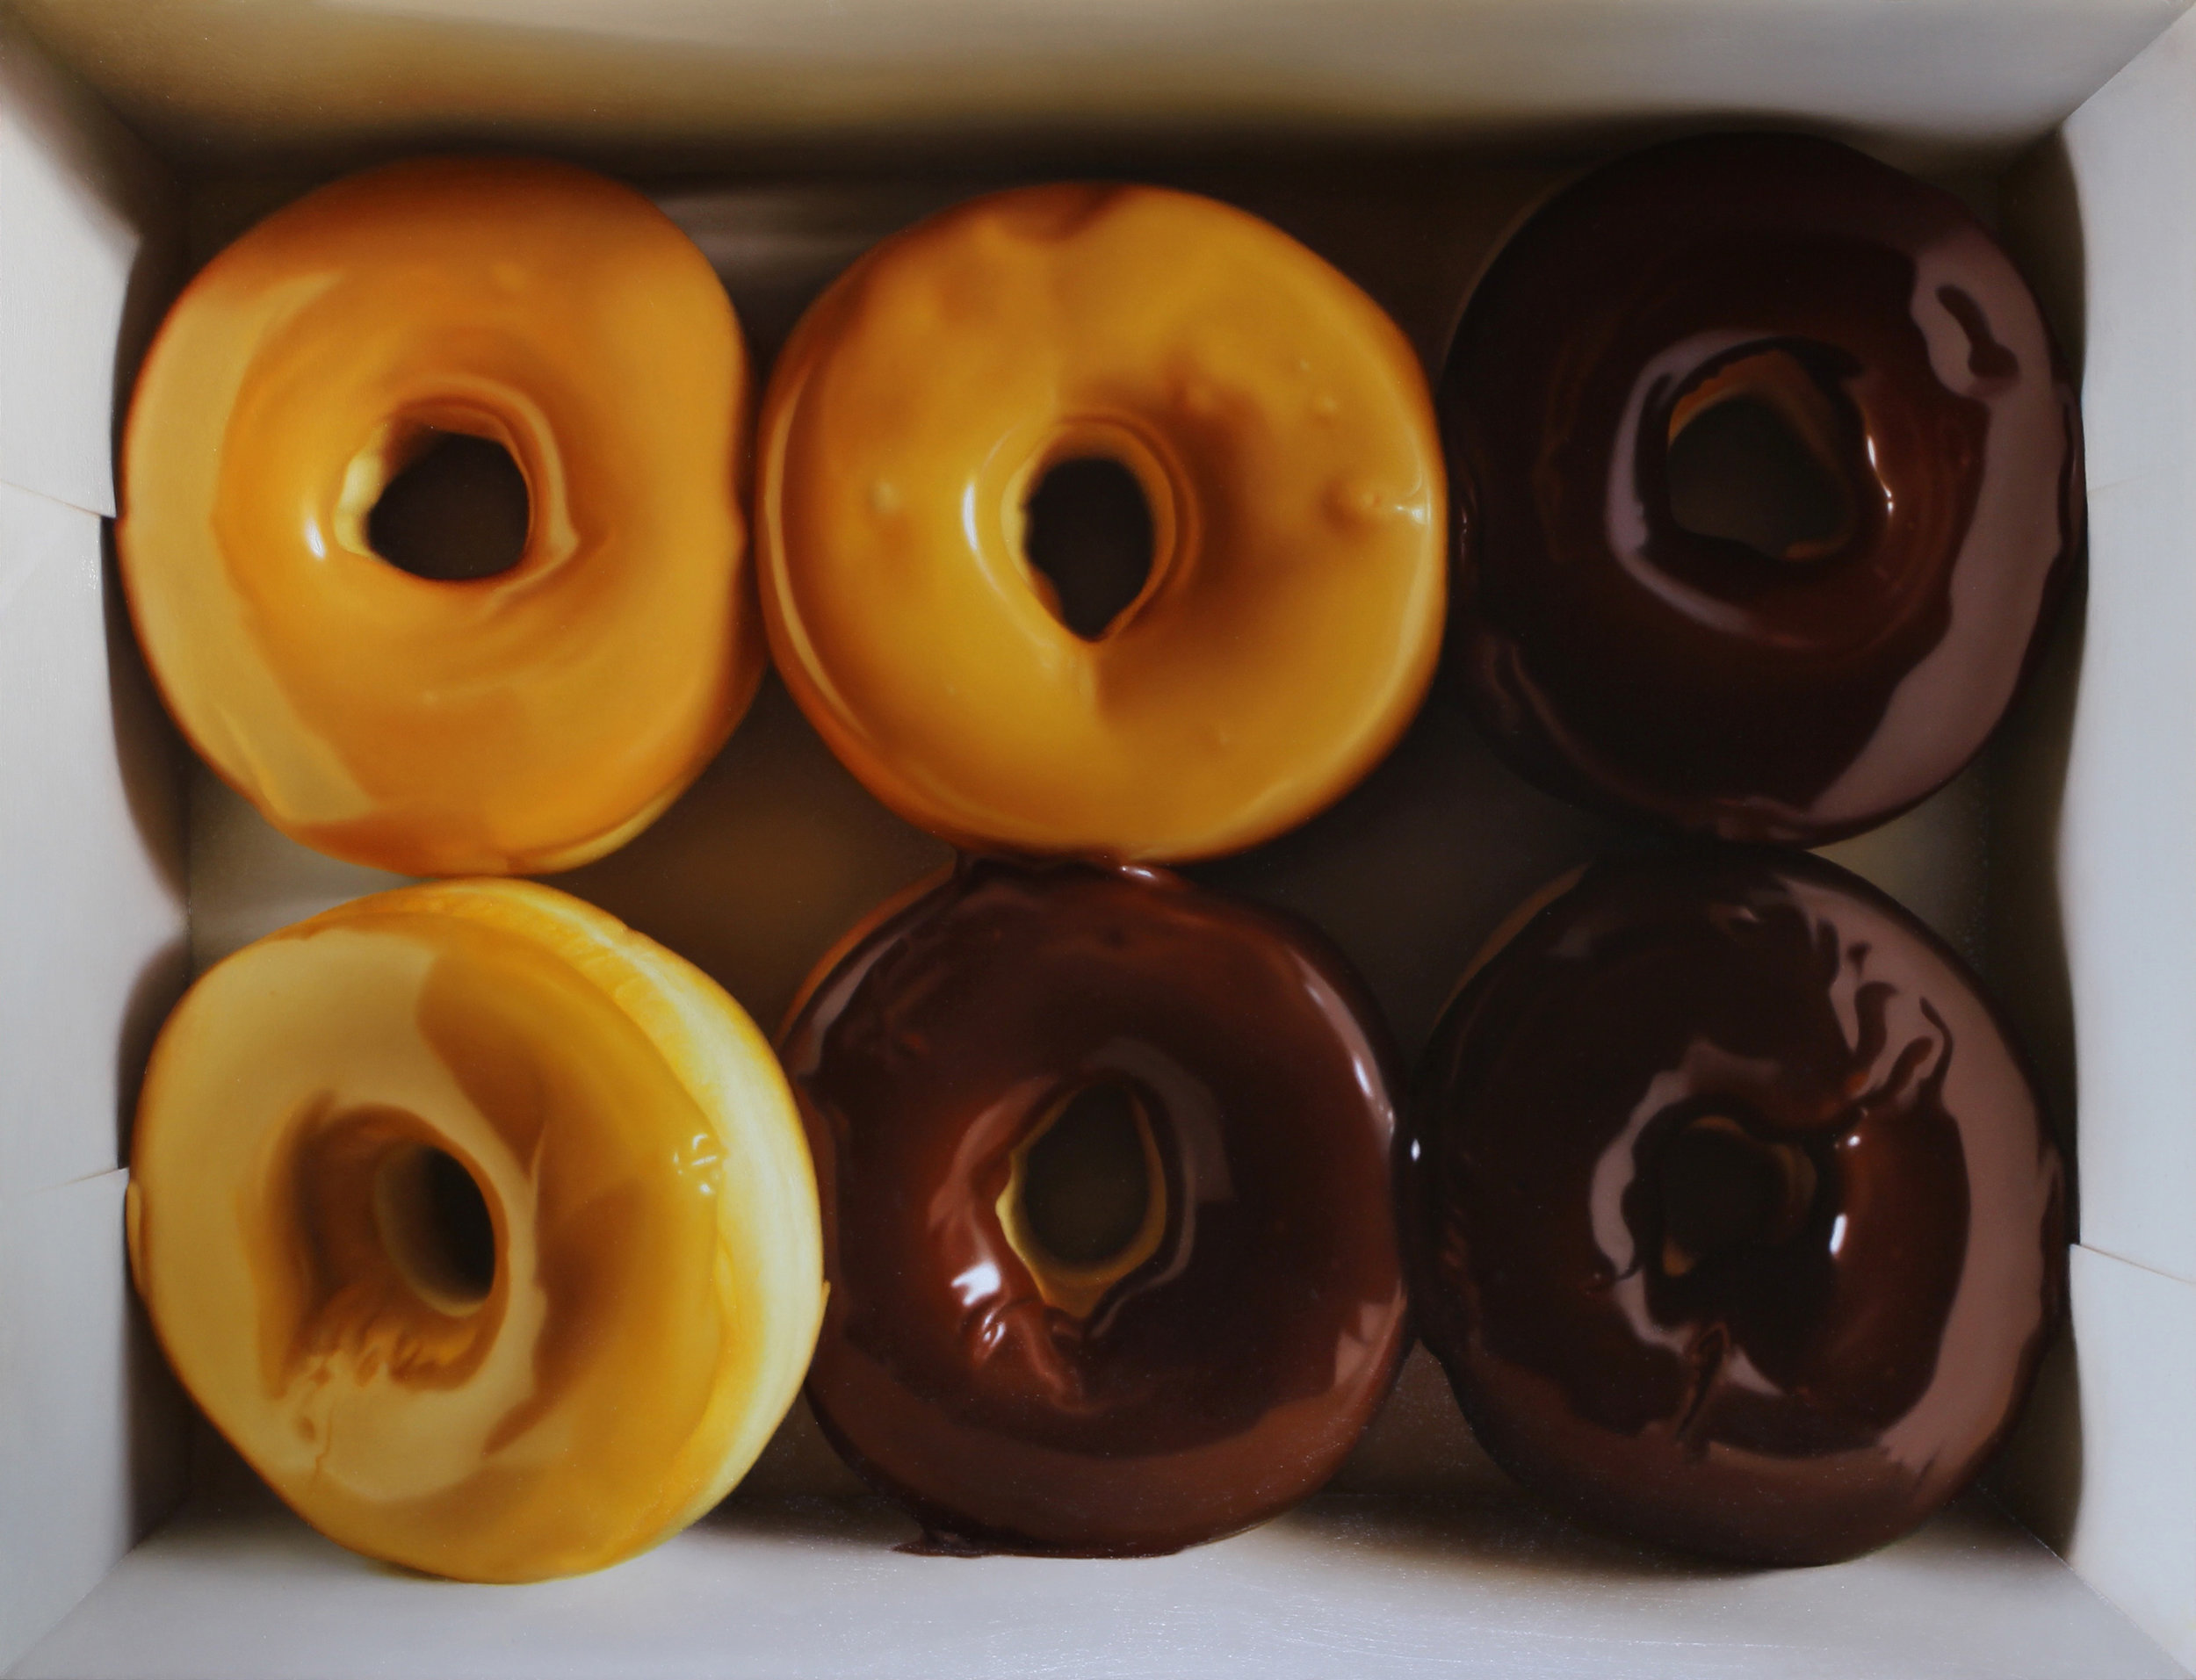  Donut Six Pack.&nbsp;Oil on panel. 